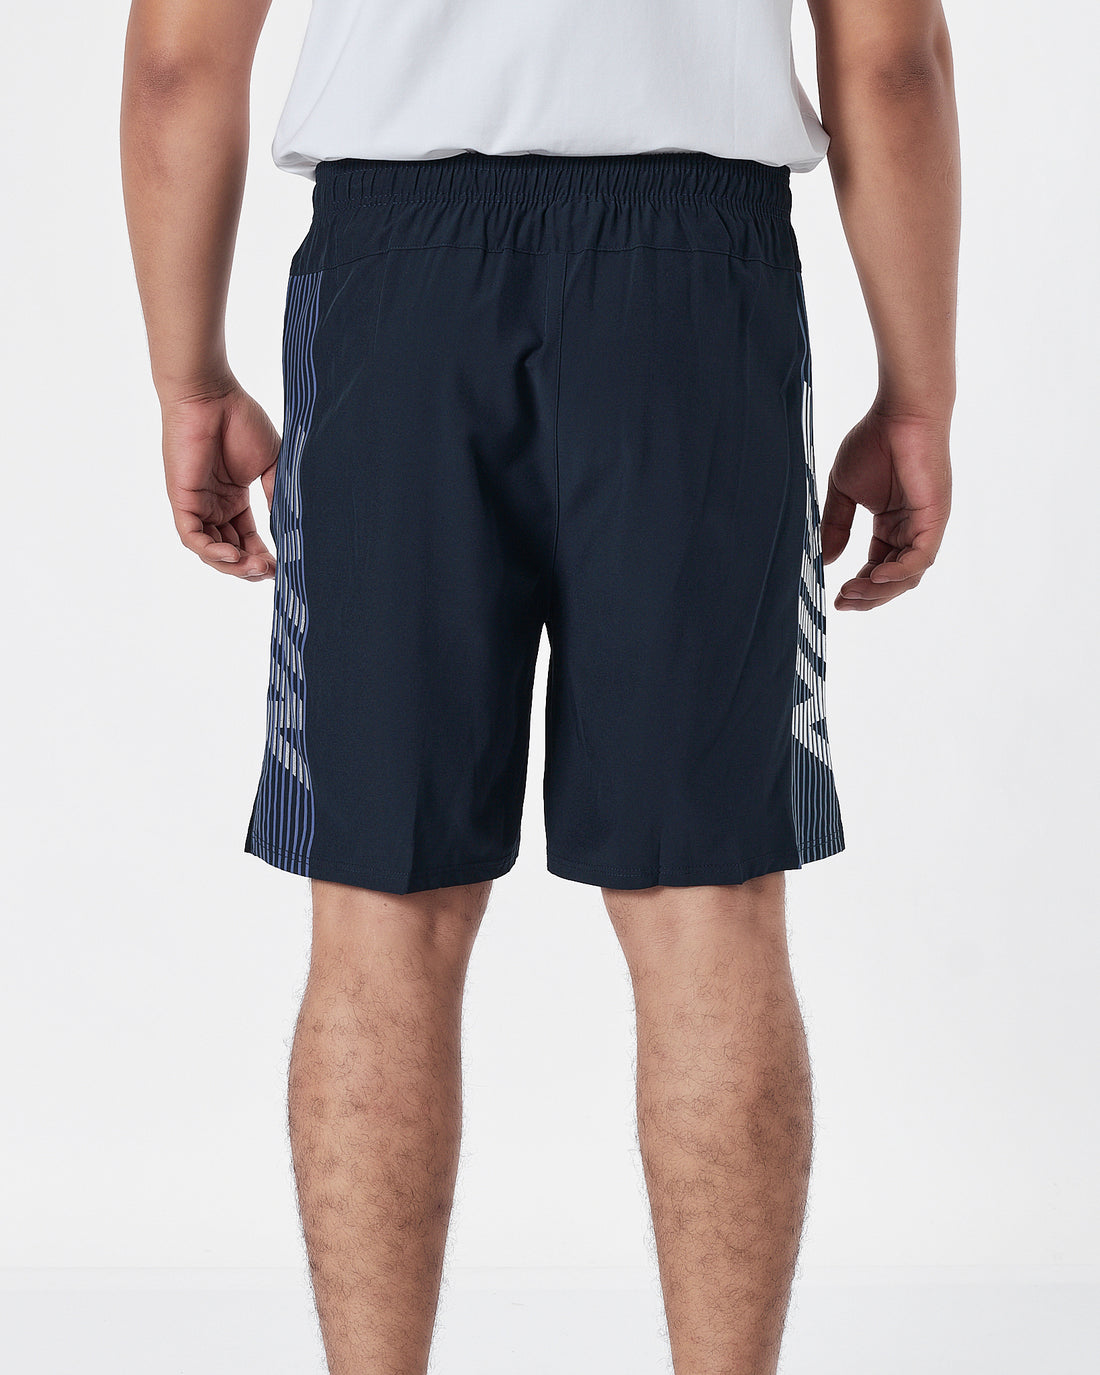 NIK Side Striped Logo Vertical Men Blue Track Shorts 12.90